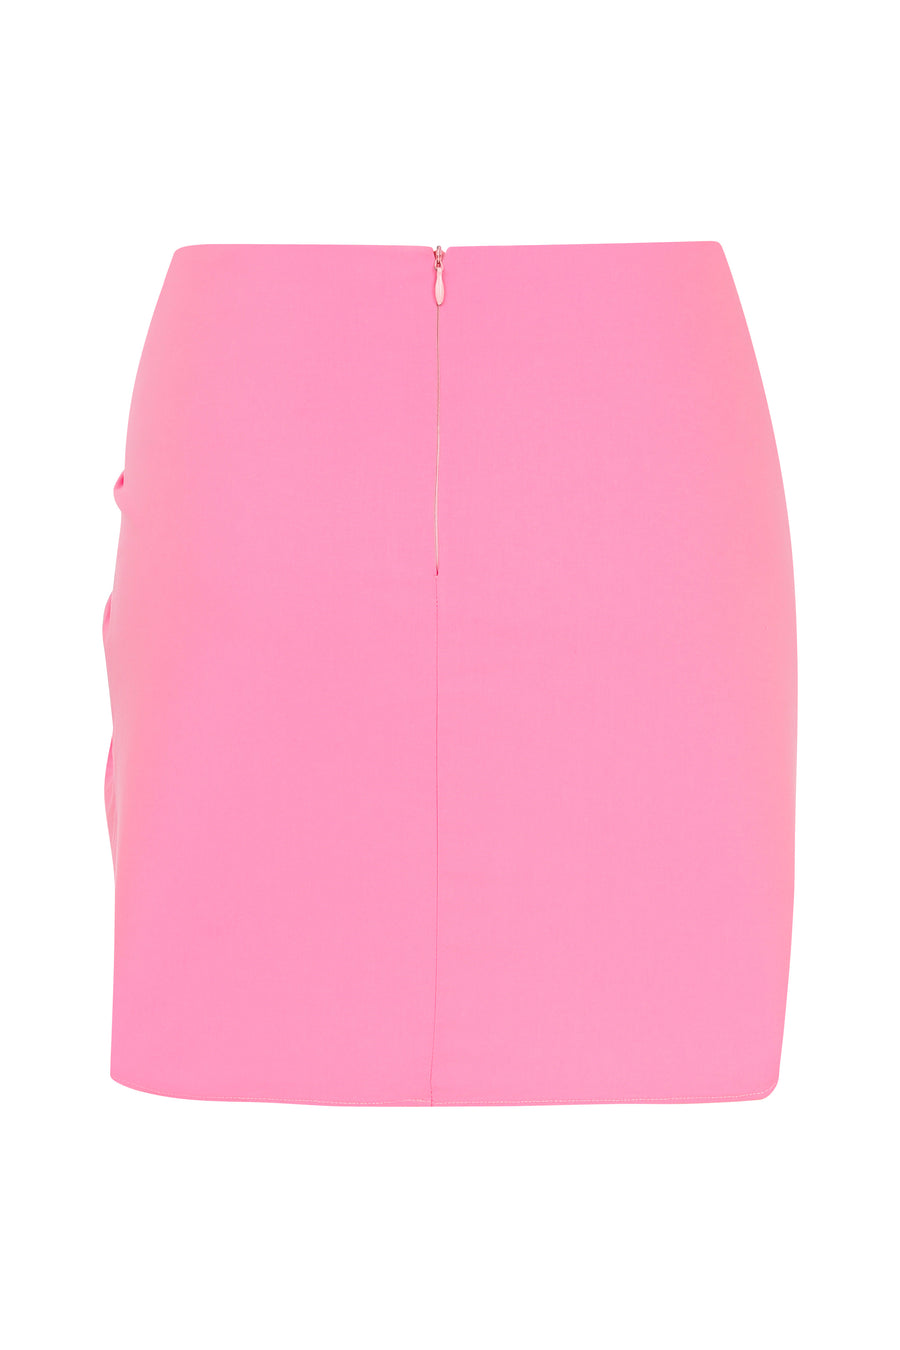 Pink Gathering Skirt